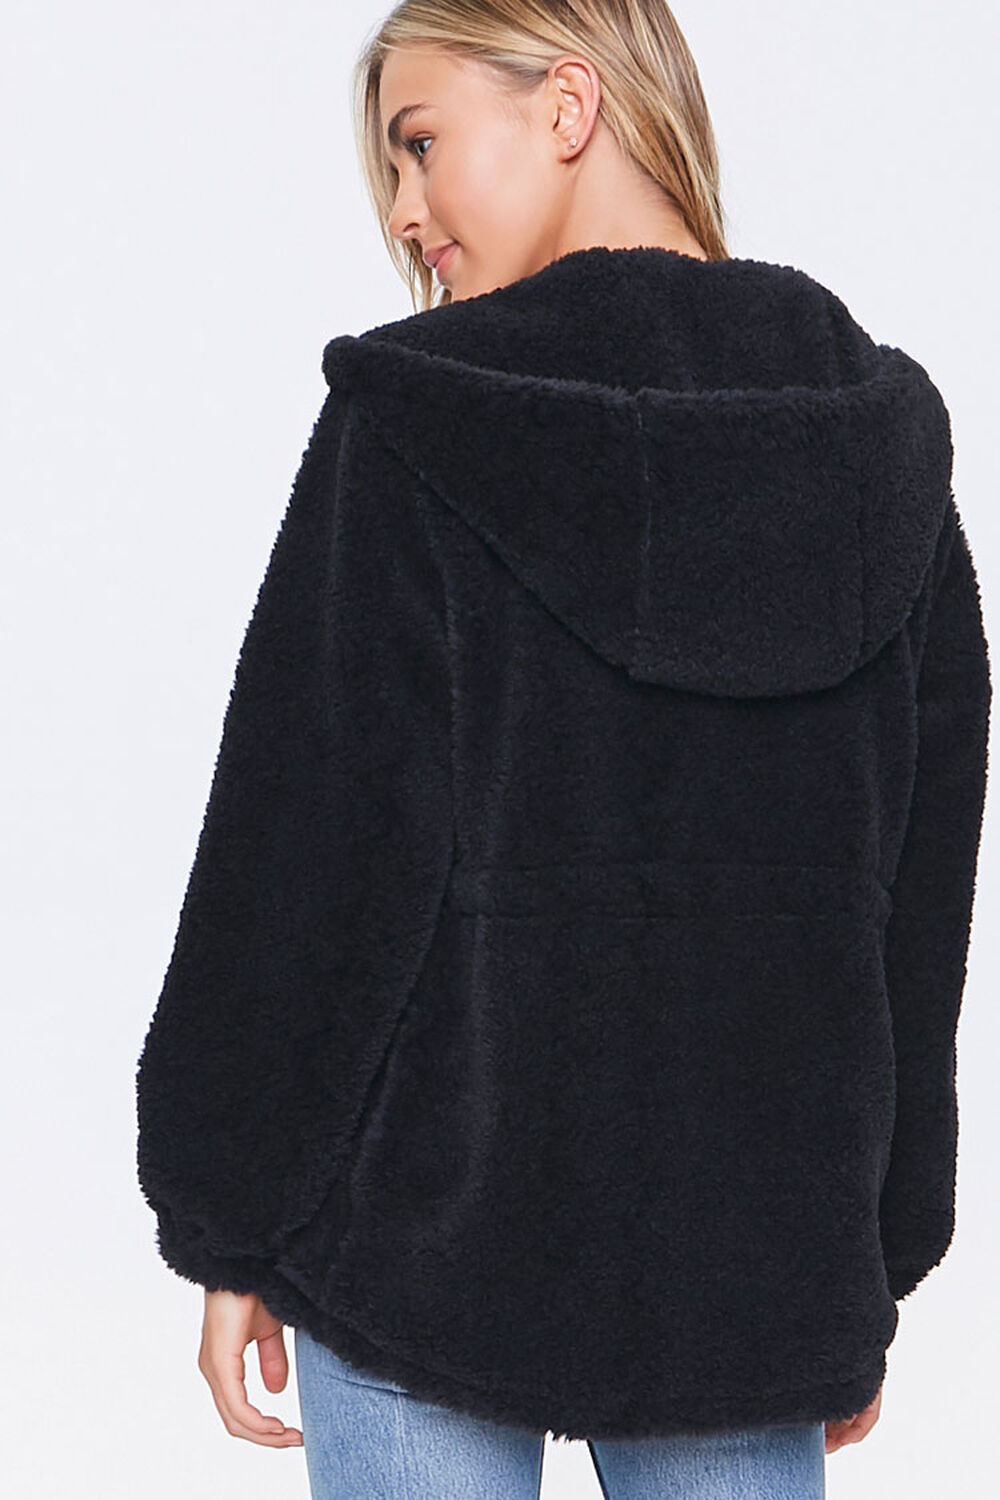 BLACK Plush Hooded Jacket, image 3